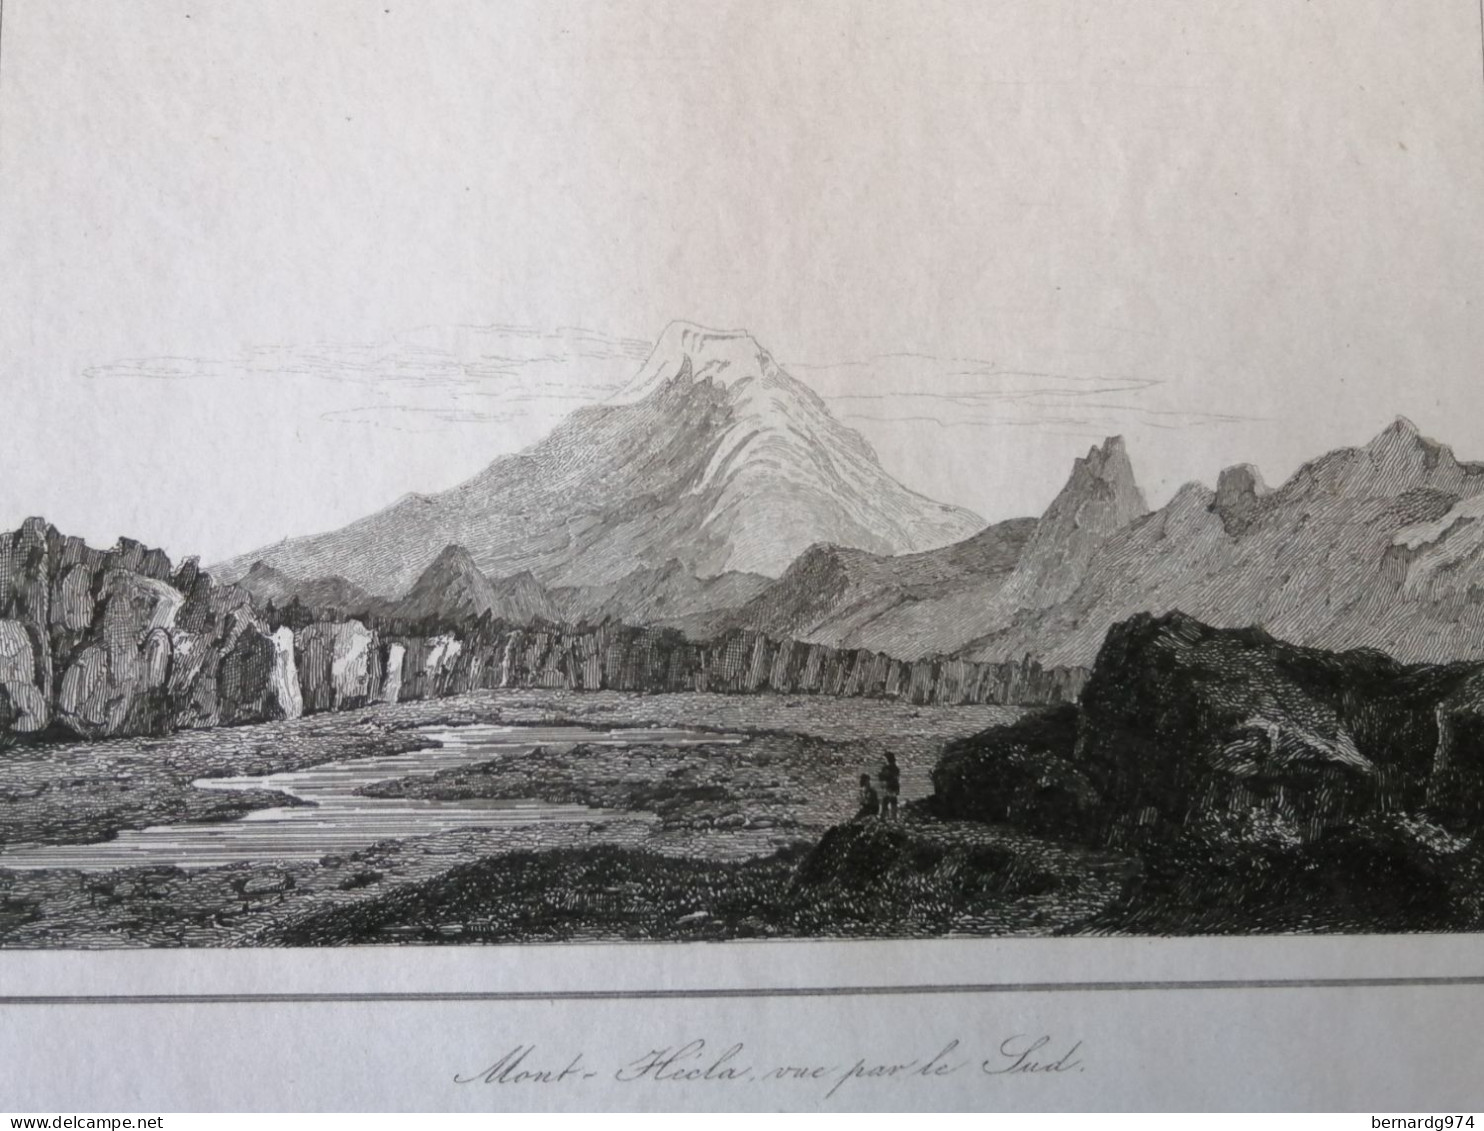 Islande Island : Nine Antique Prints - Geographische Kaarten